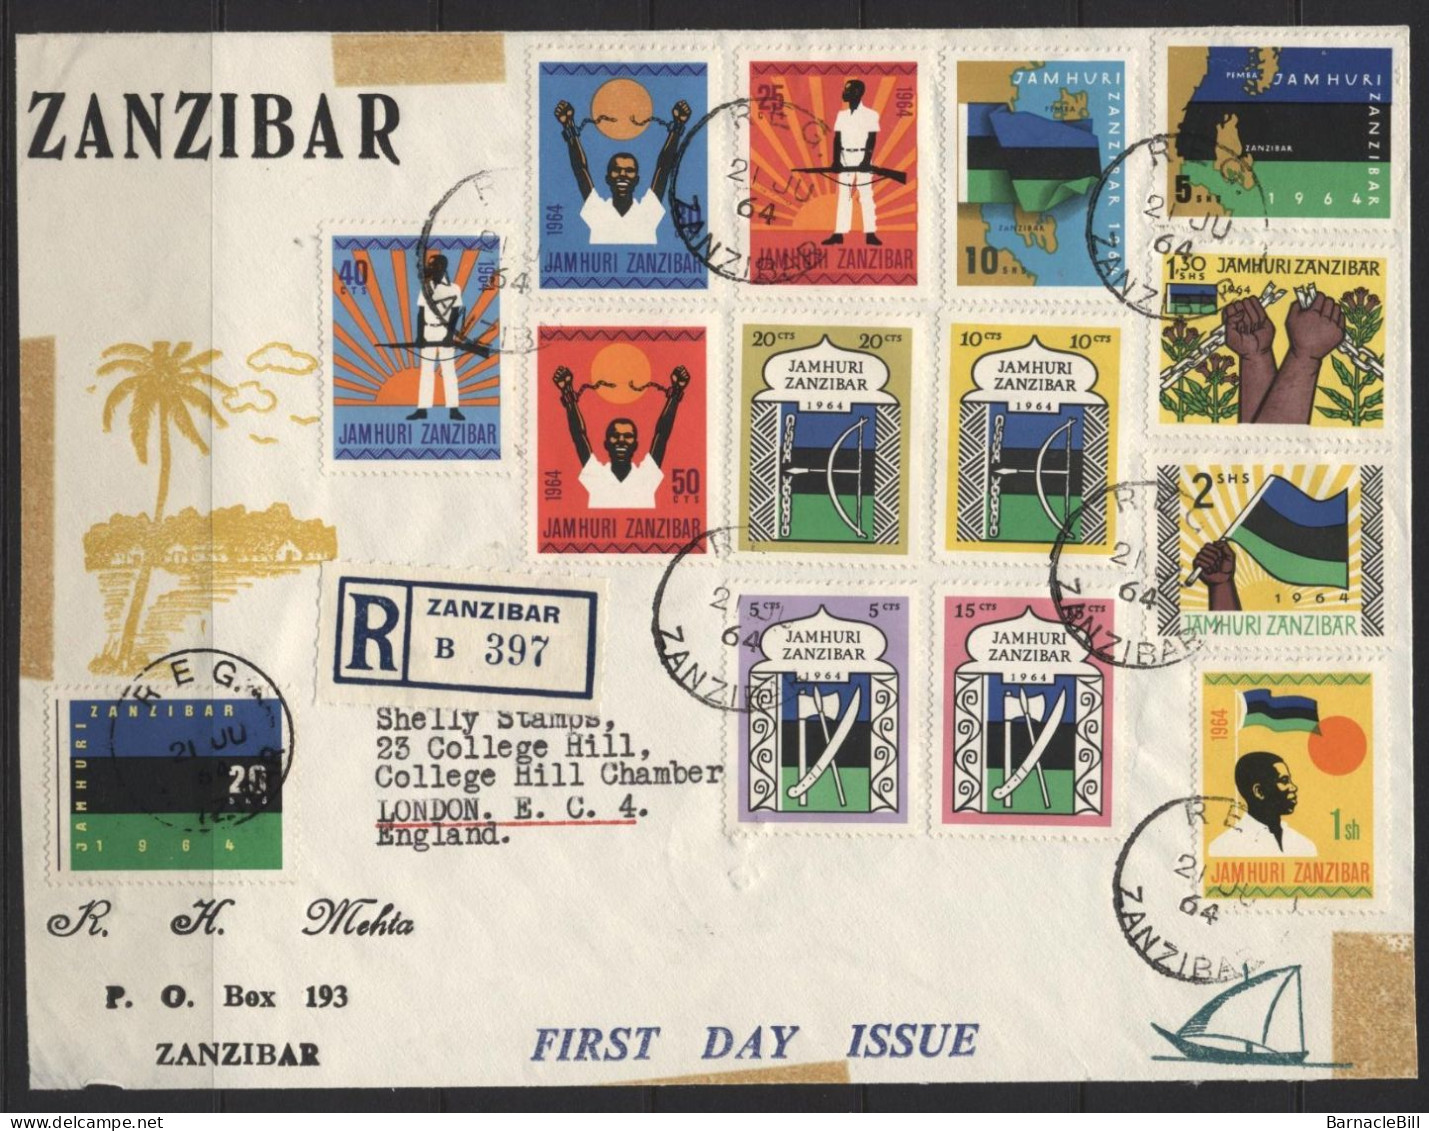 Zanzibar (01) 1964 Set. First Day Cover - Single Sheet. Hinged. - Zanzibar (1963-1968)